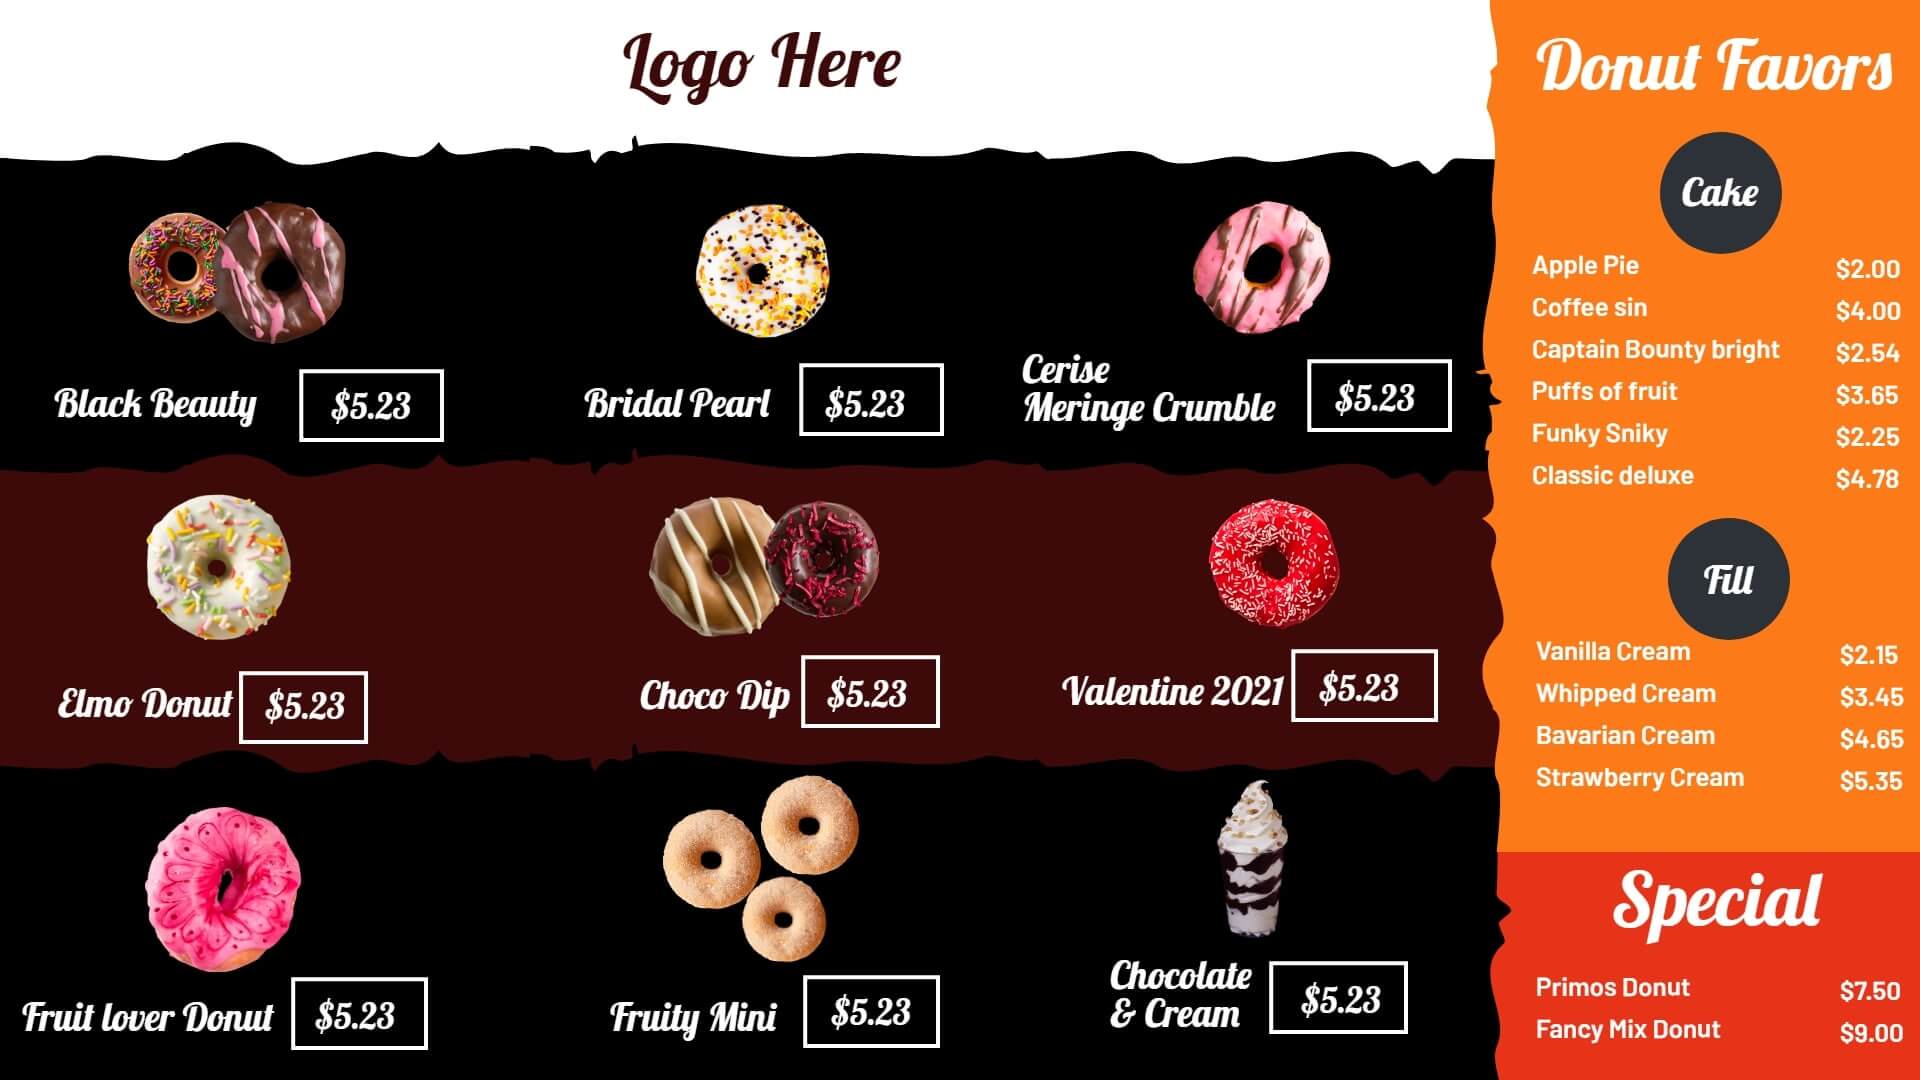 donut favors menu template for digital display